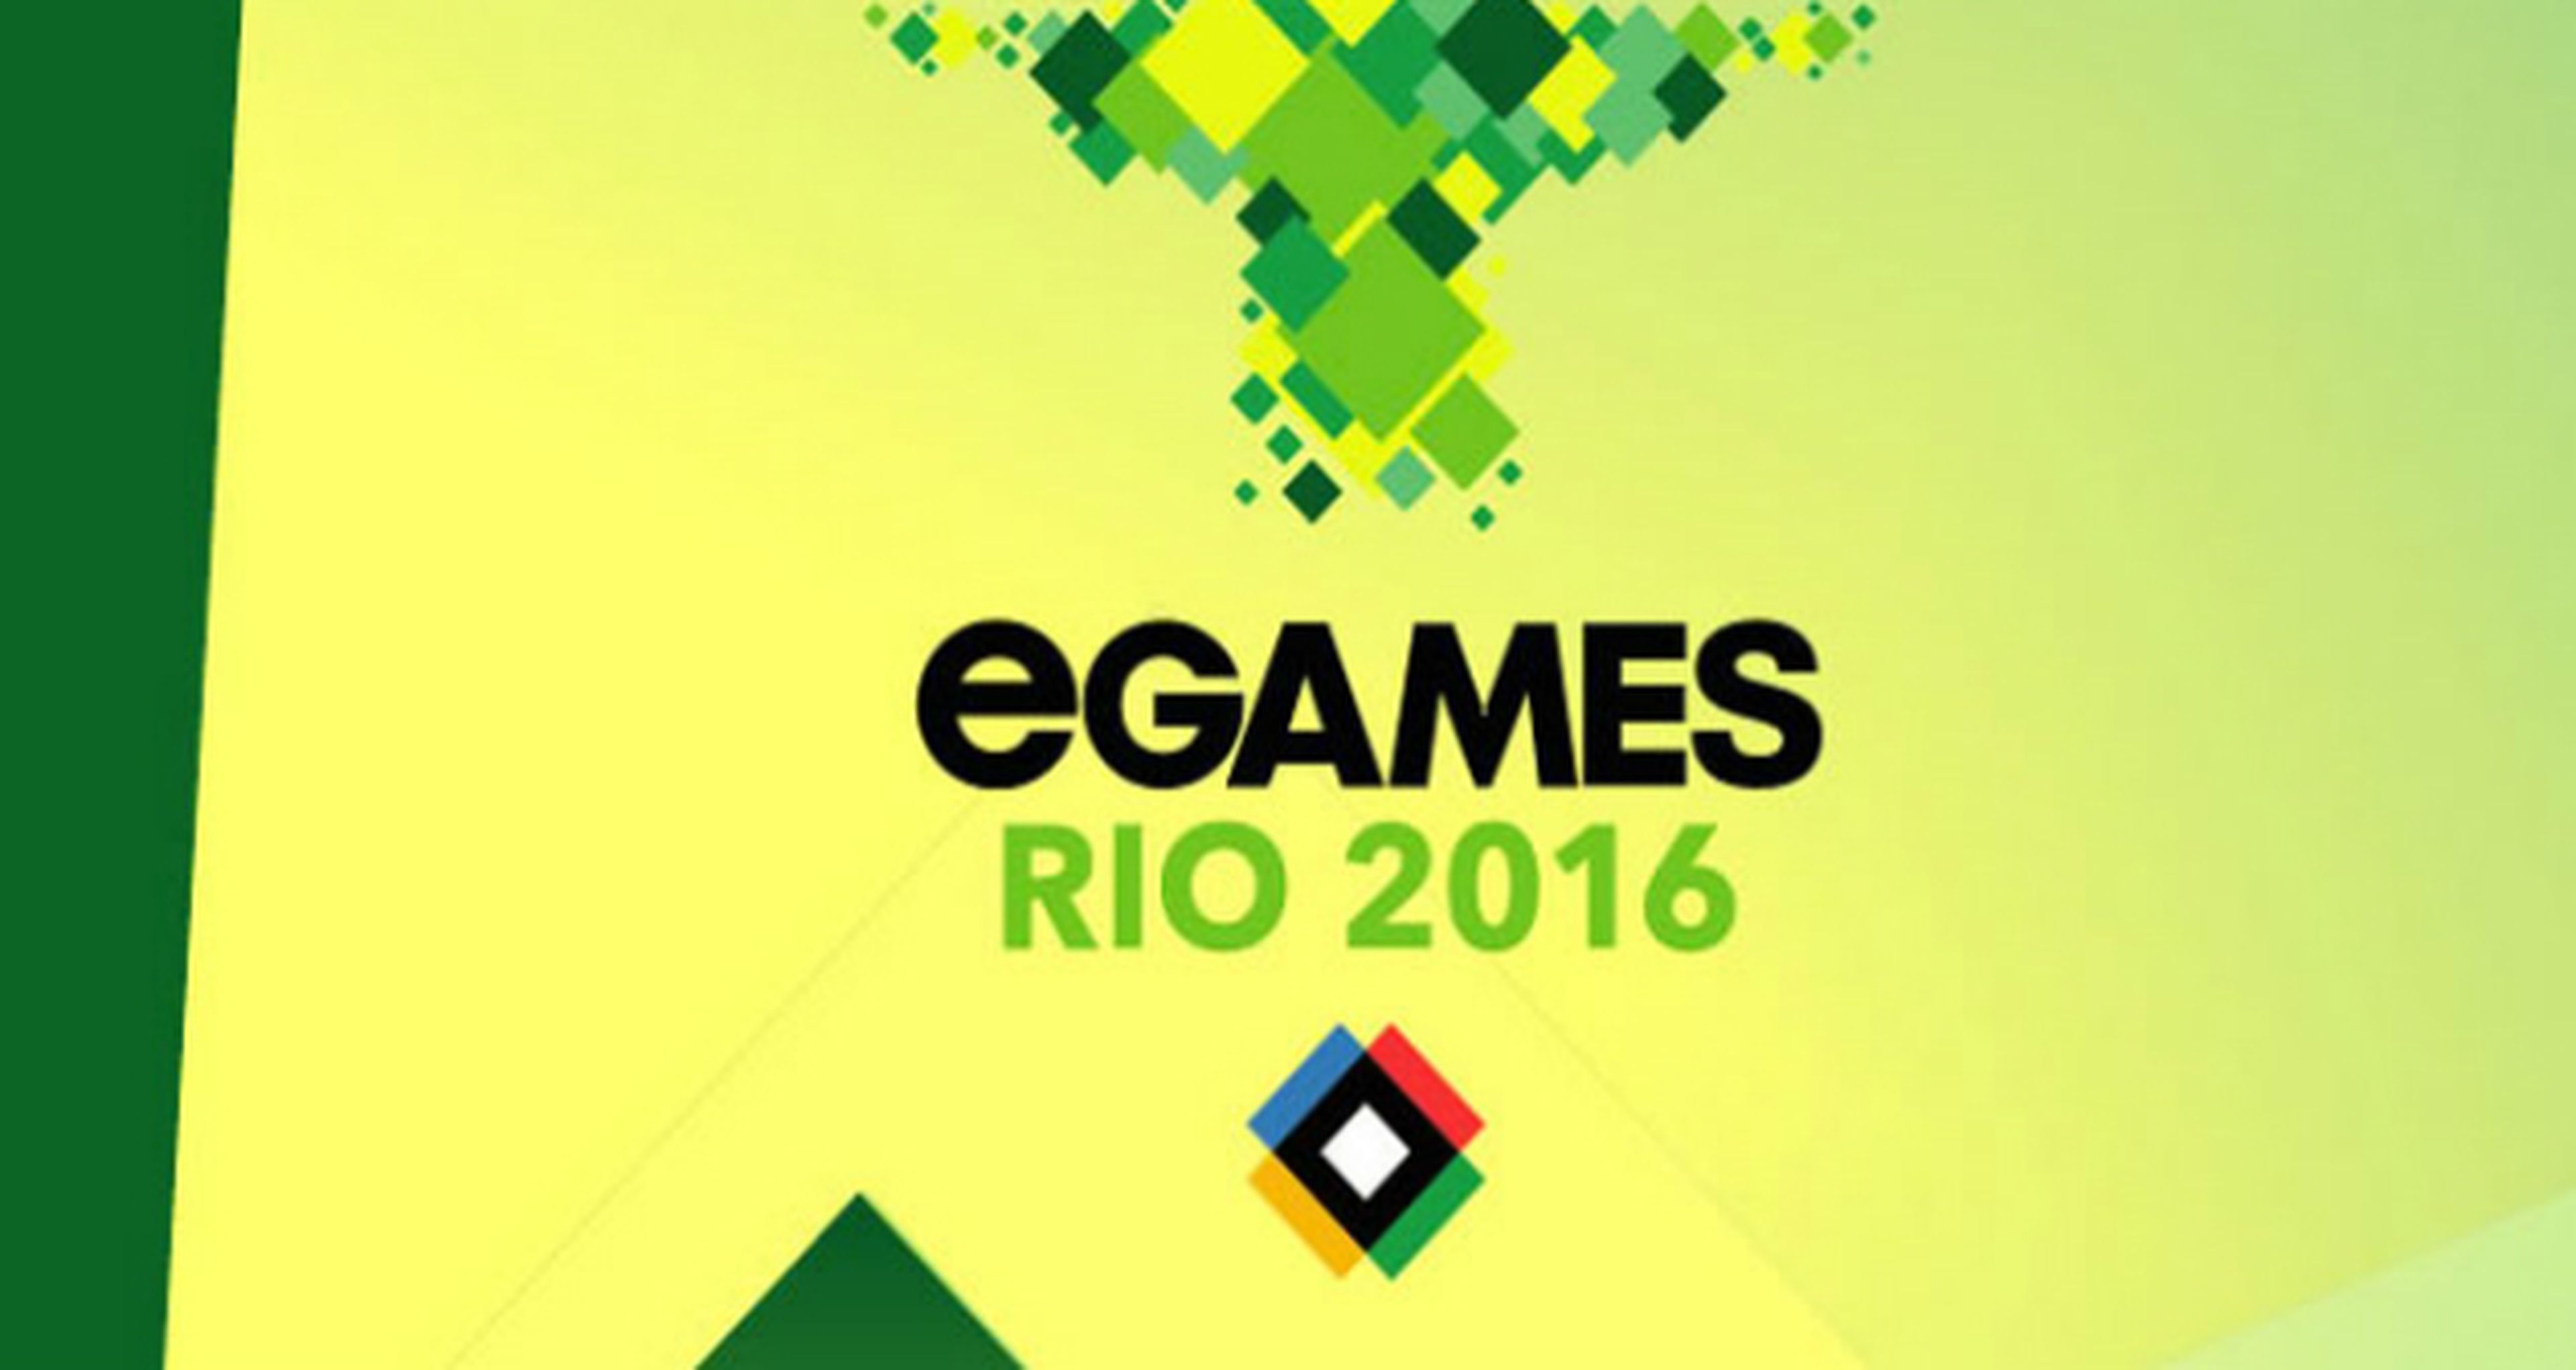 eGames - Evento eSports durante los Juegos Olímpicos de Rio 2016